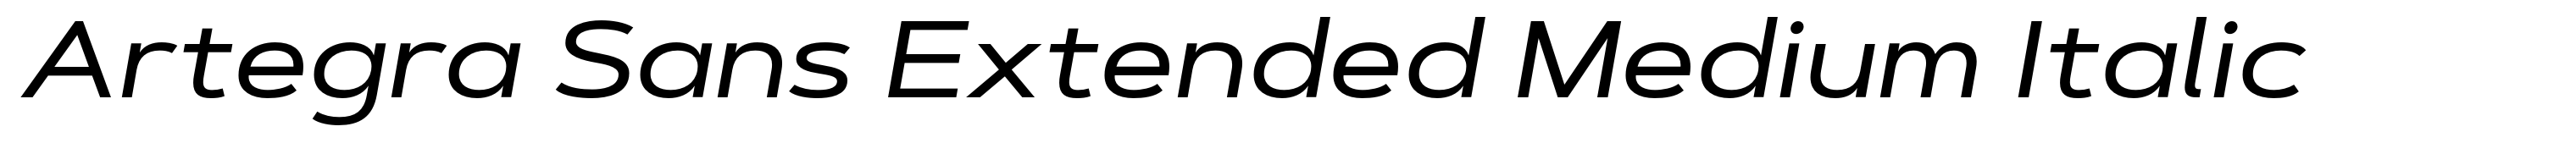 Artegra Sans Extended Medium Italic